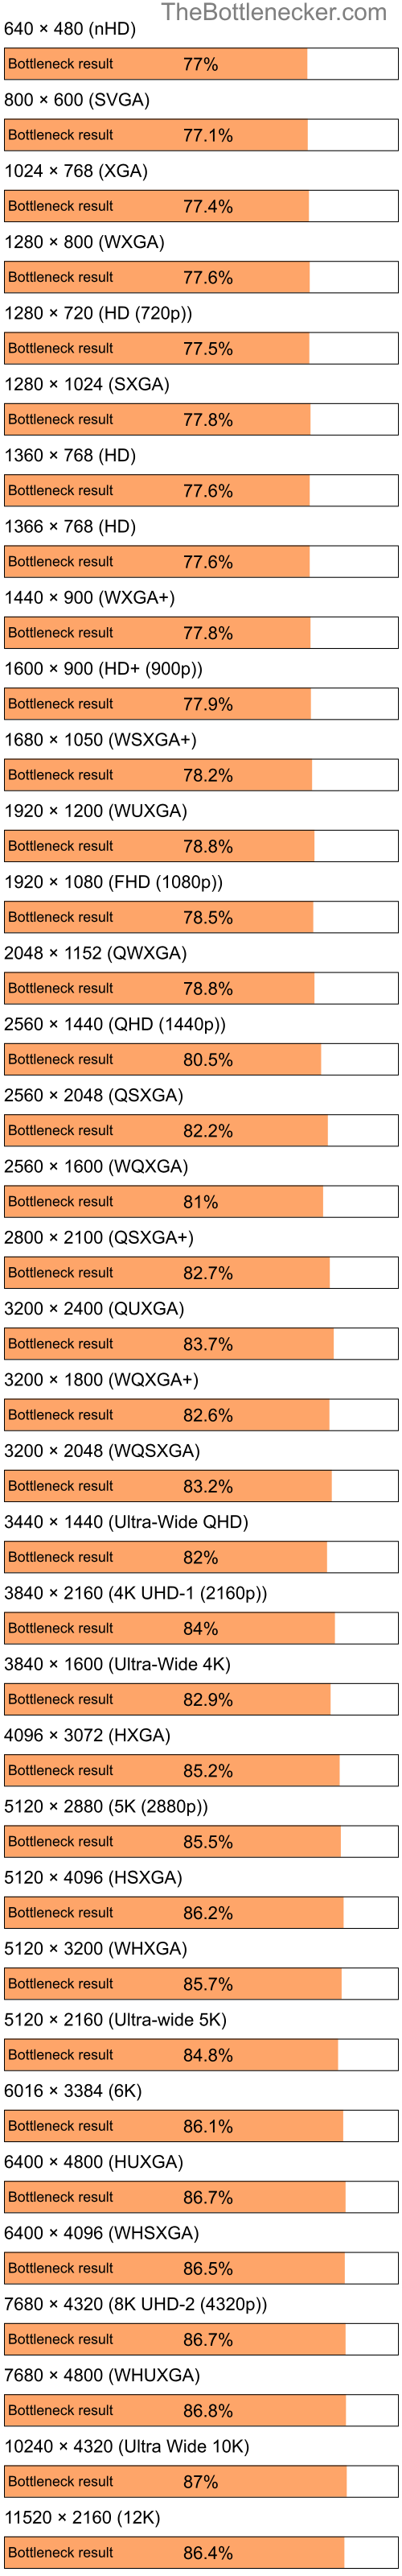 Bottleneck results by resolution for Intel Celeron and NVIDIA GeForce 6150SE nForce 430 in General Tasks